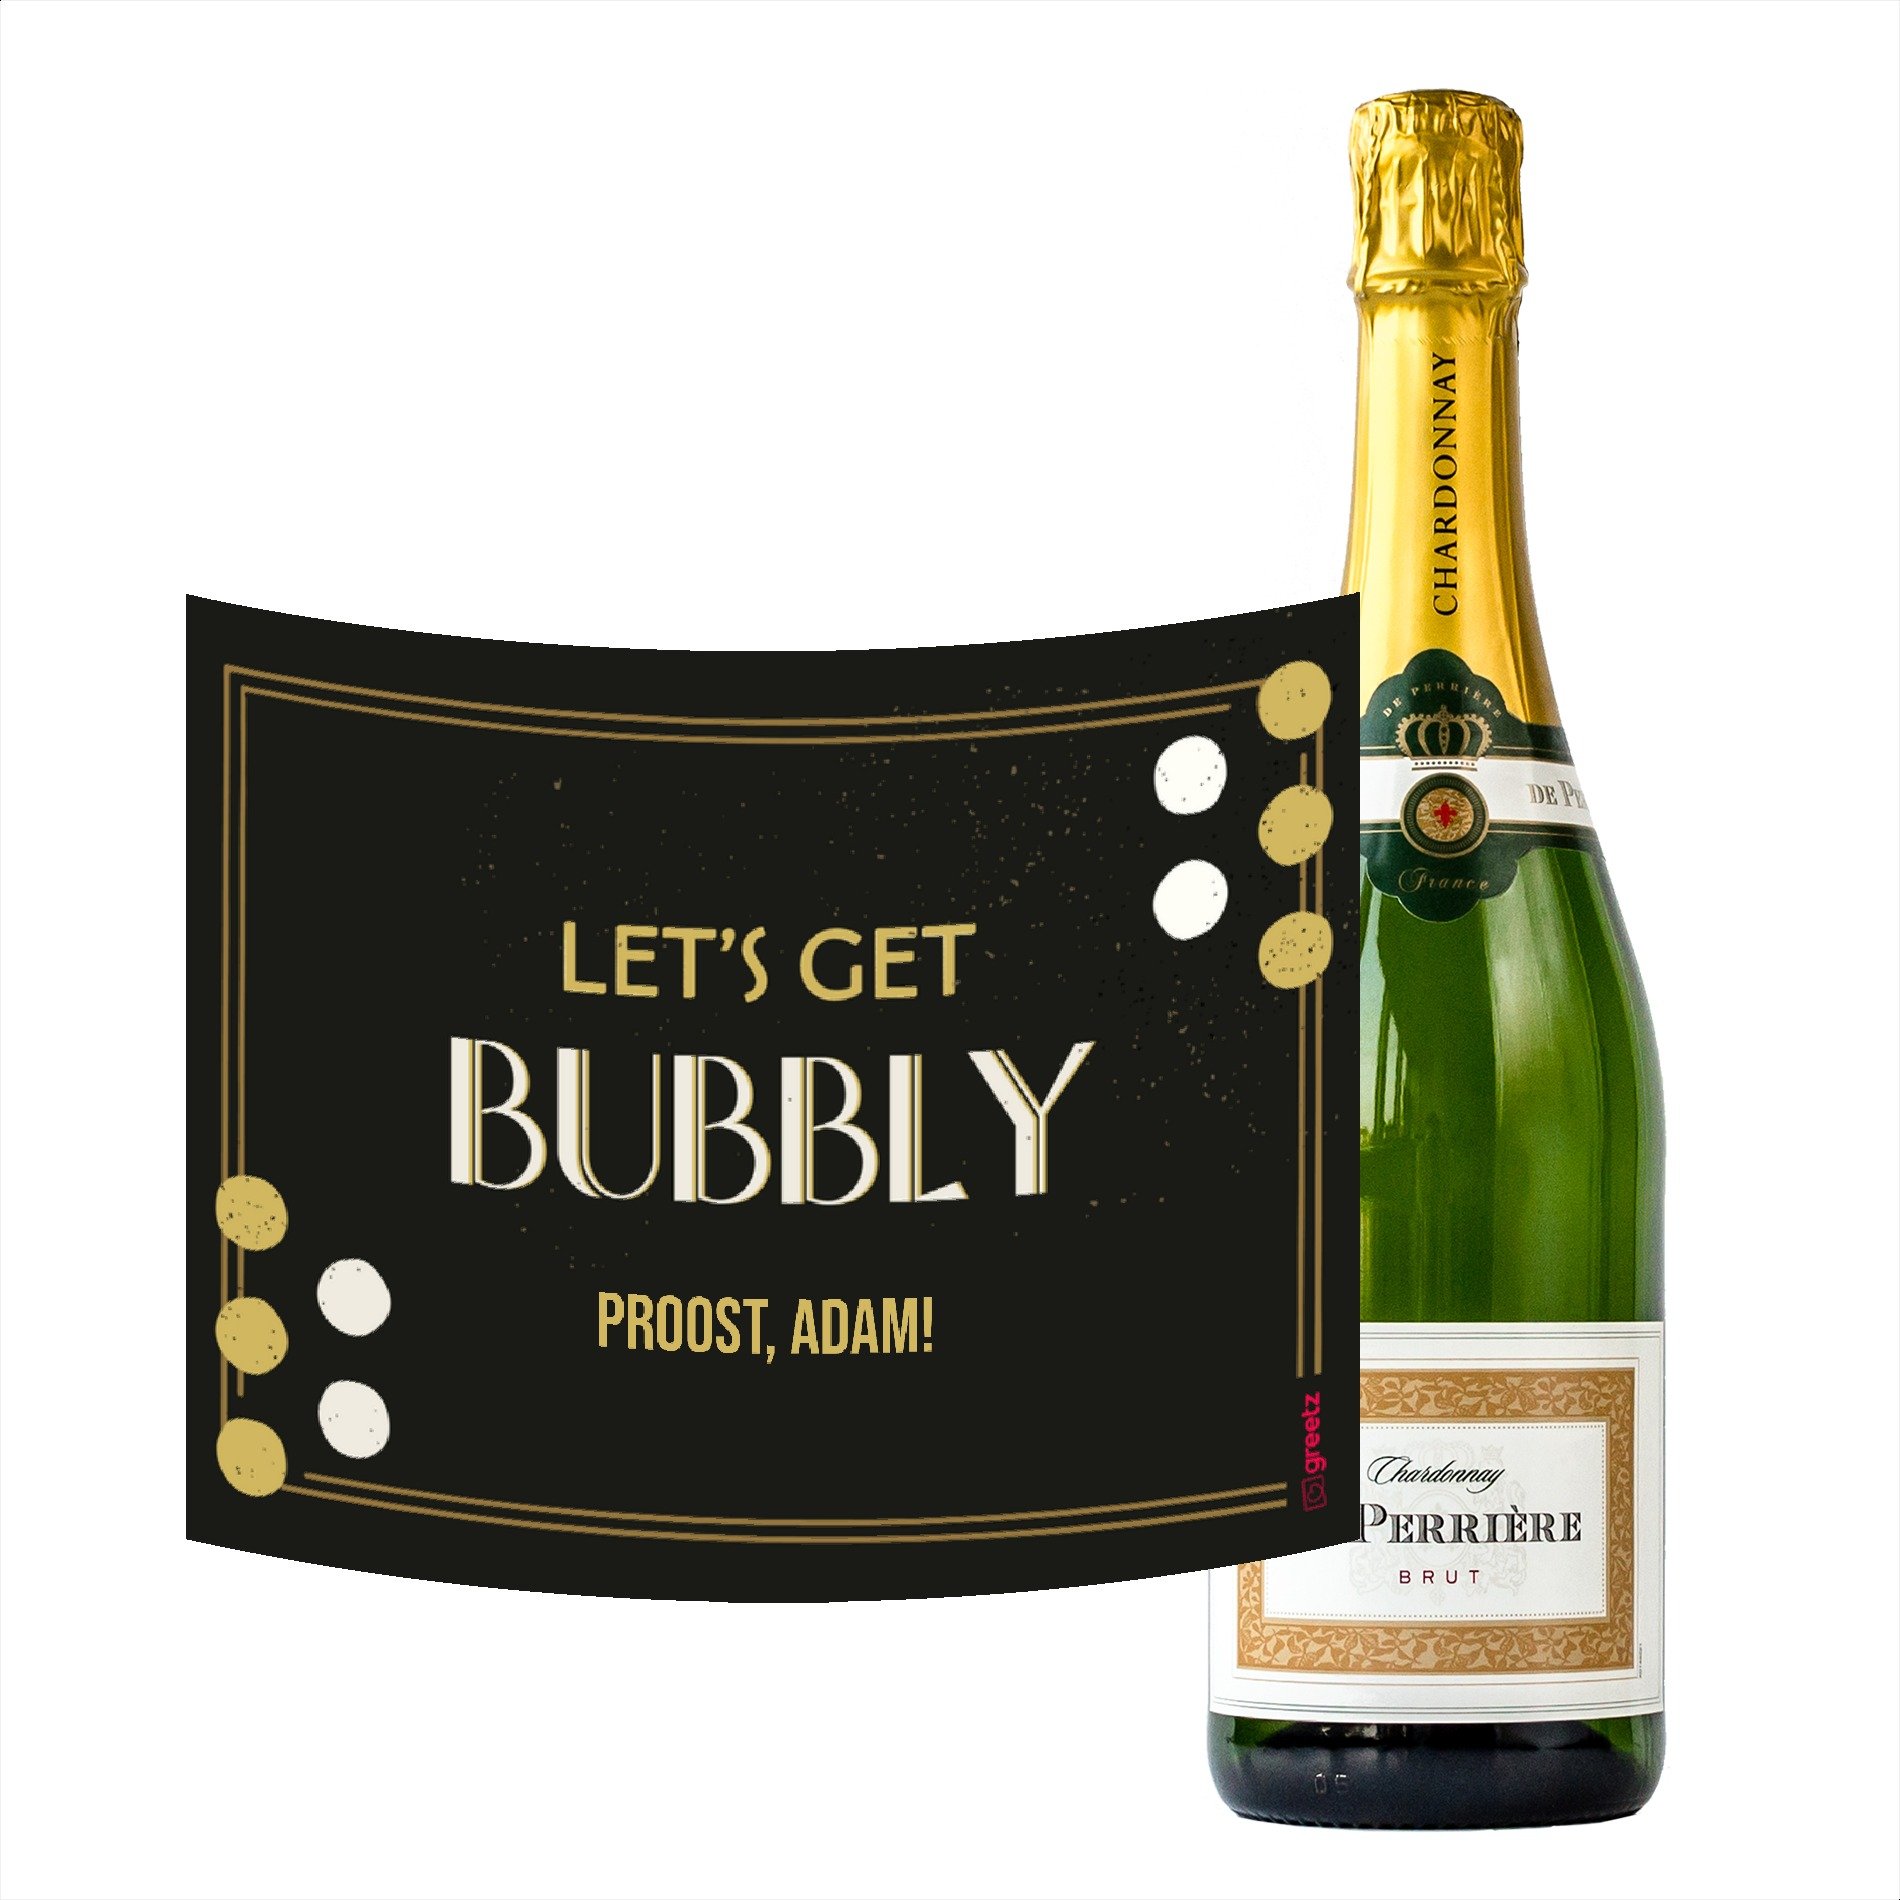 Perriere - Brut Chardonnay - Let's get bubbly met eigen naam - 750ml